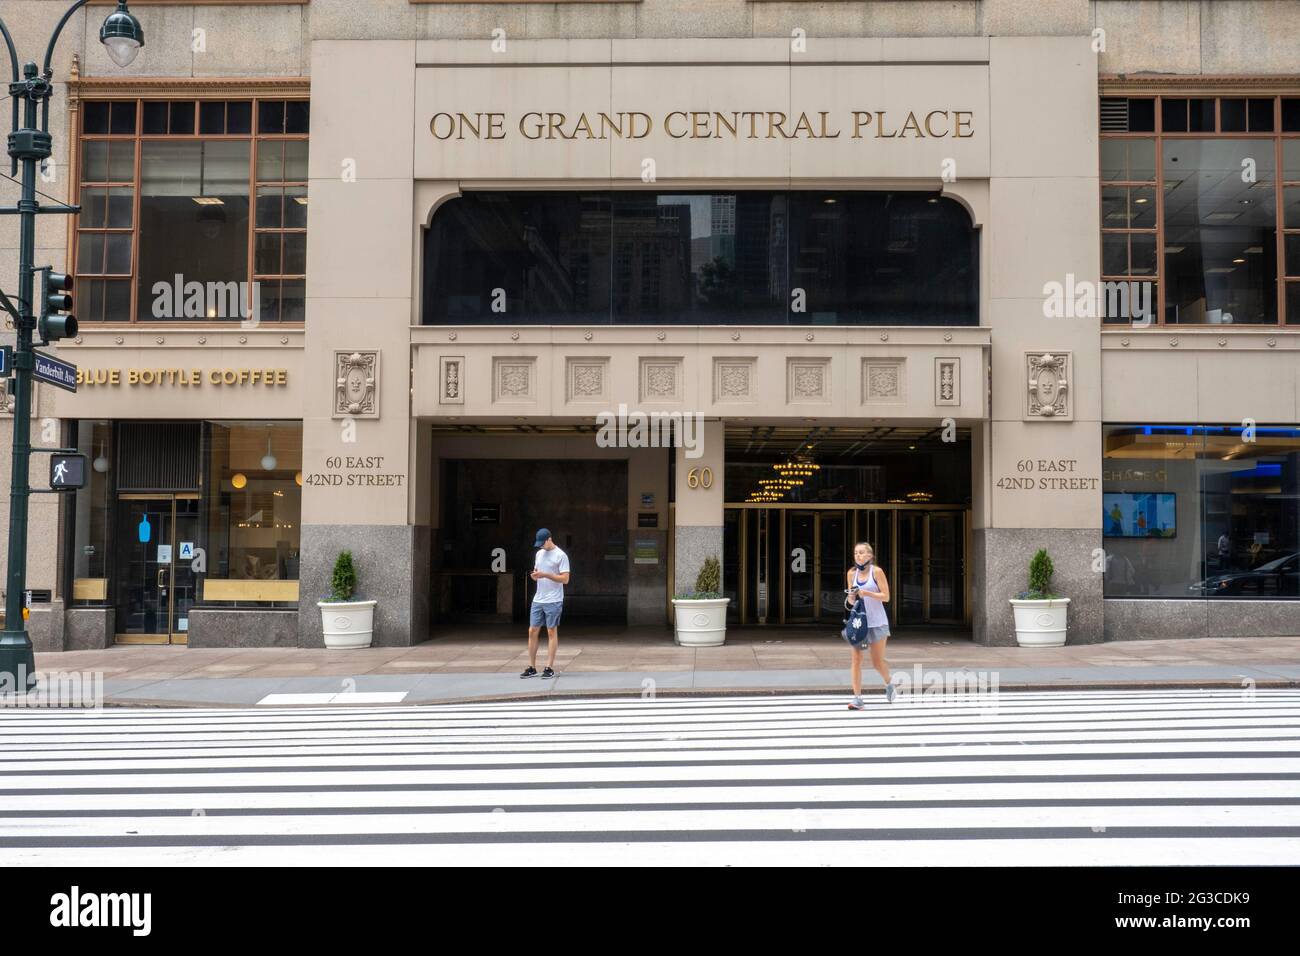 One Grand Central place est situé sur East 42nd Street, New York City Banque D'Images